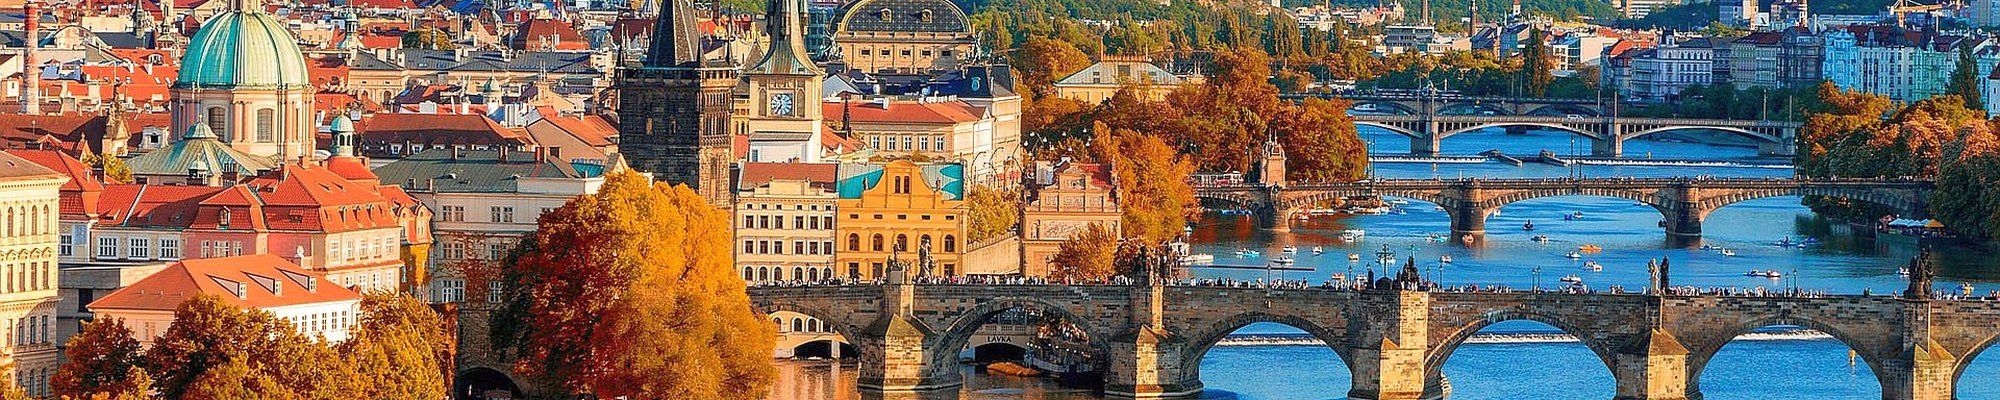 Sommerreise nach Prag